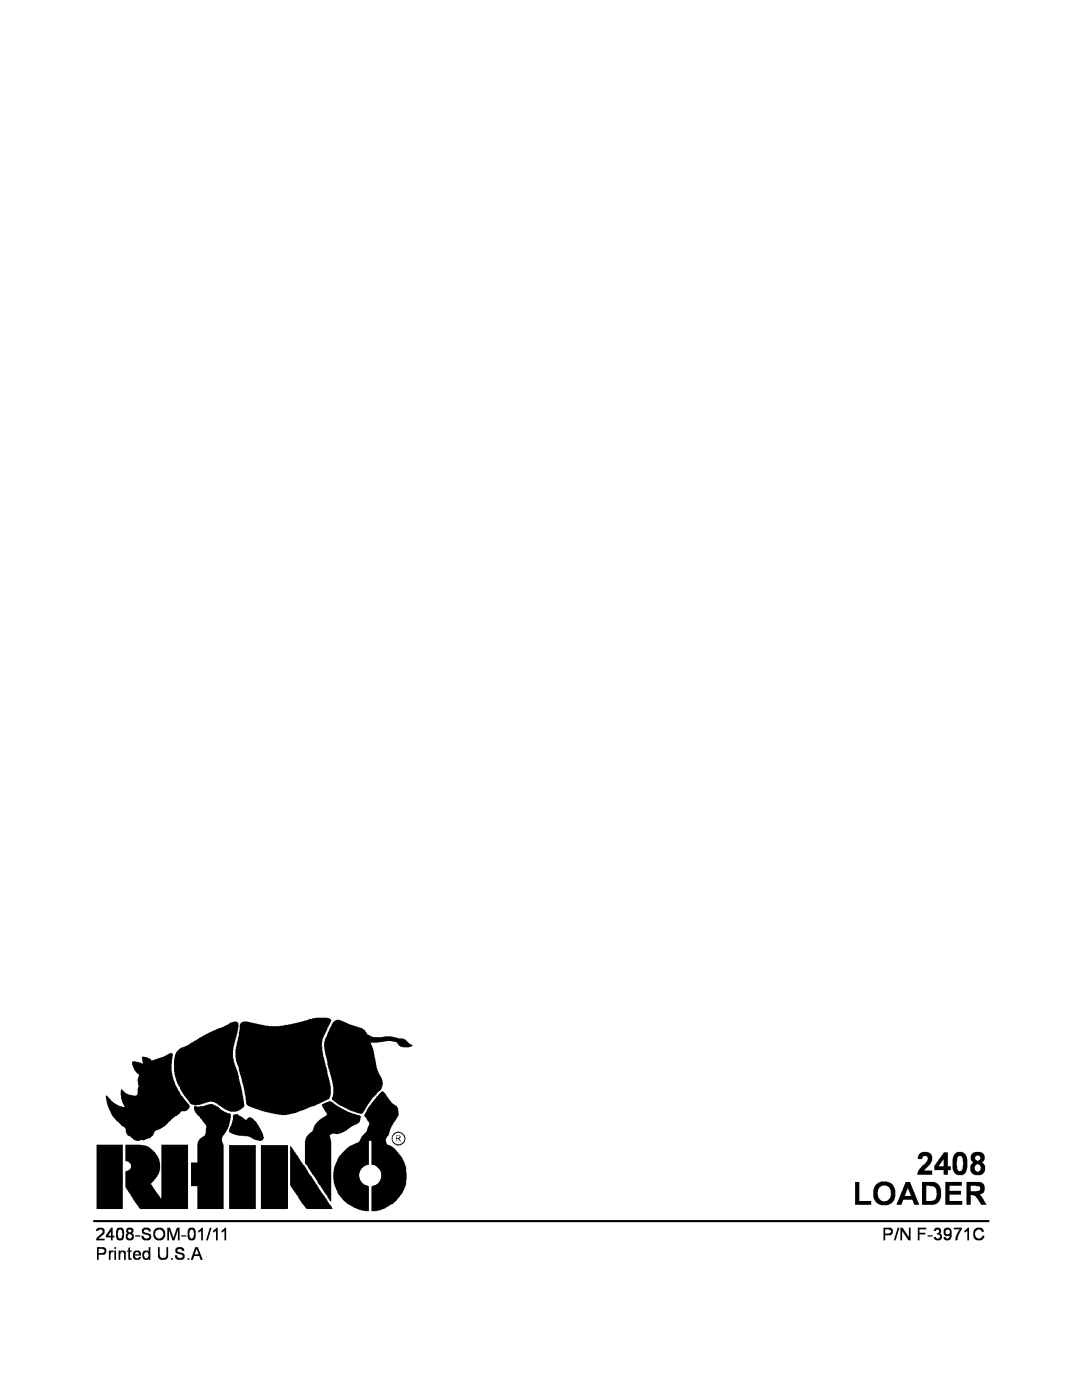 Rhino Mounts 2408 manual Loader, SOM-01/11, P/N F-3971C, Printed U.S.A 